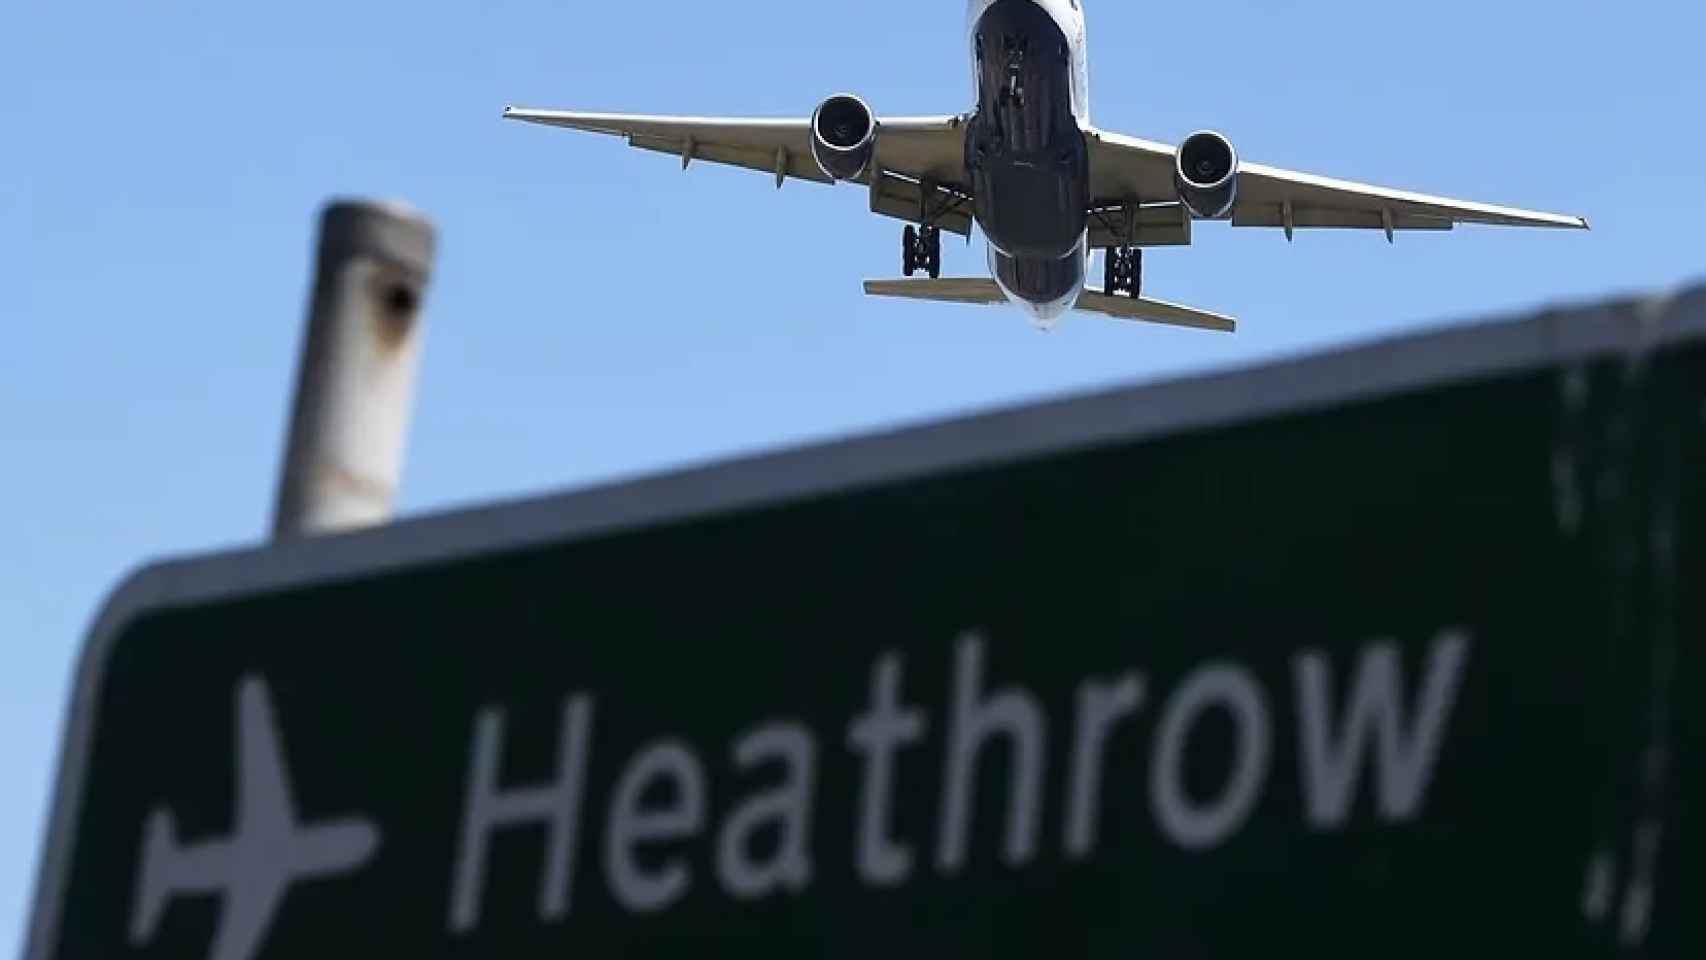 Un avión llegando al aeropuerto británico de Heathrow, en imagen de archivo.